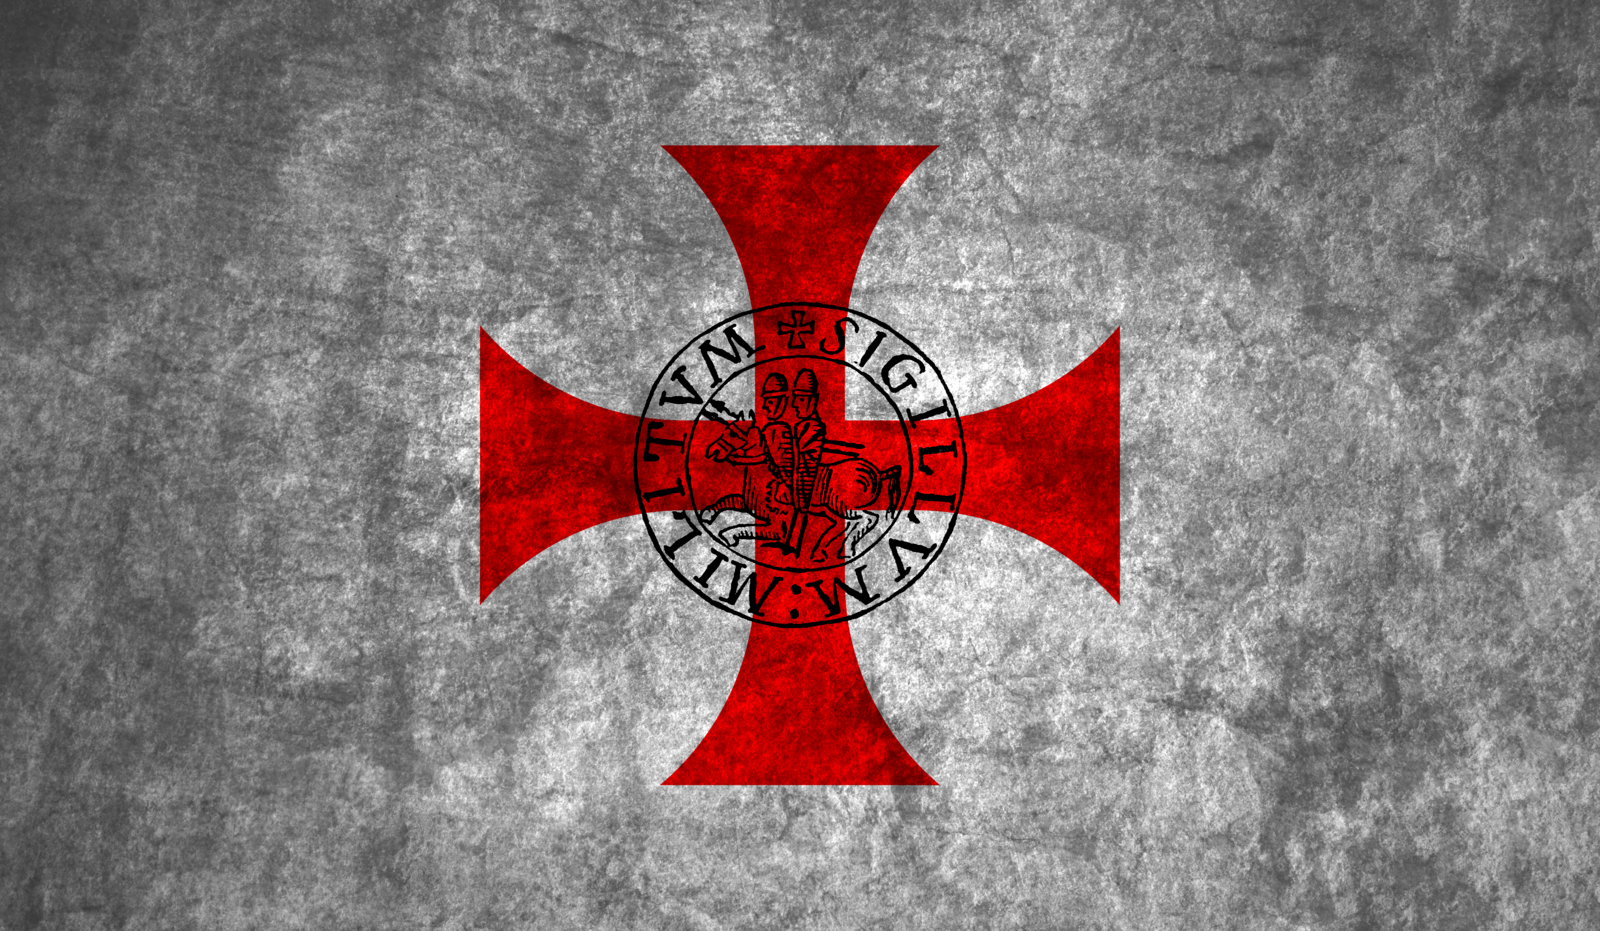 Templars flag by HistoryBuf on DeviantArt